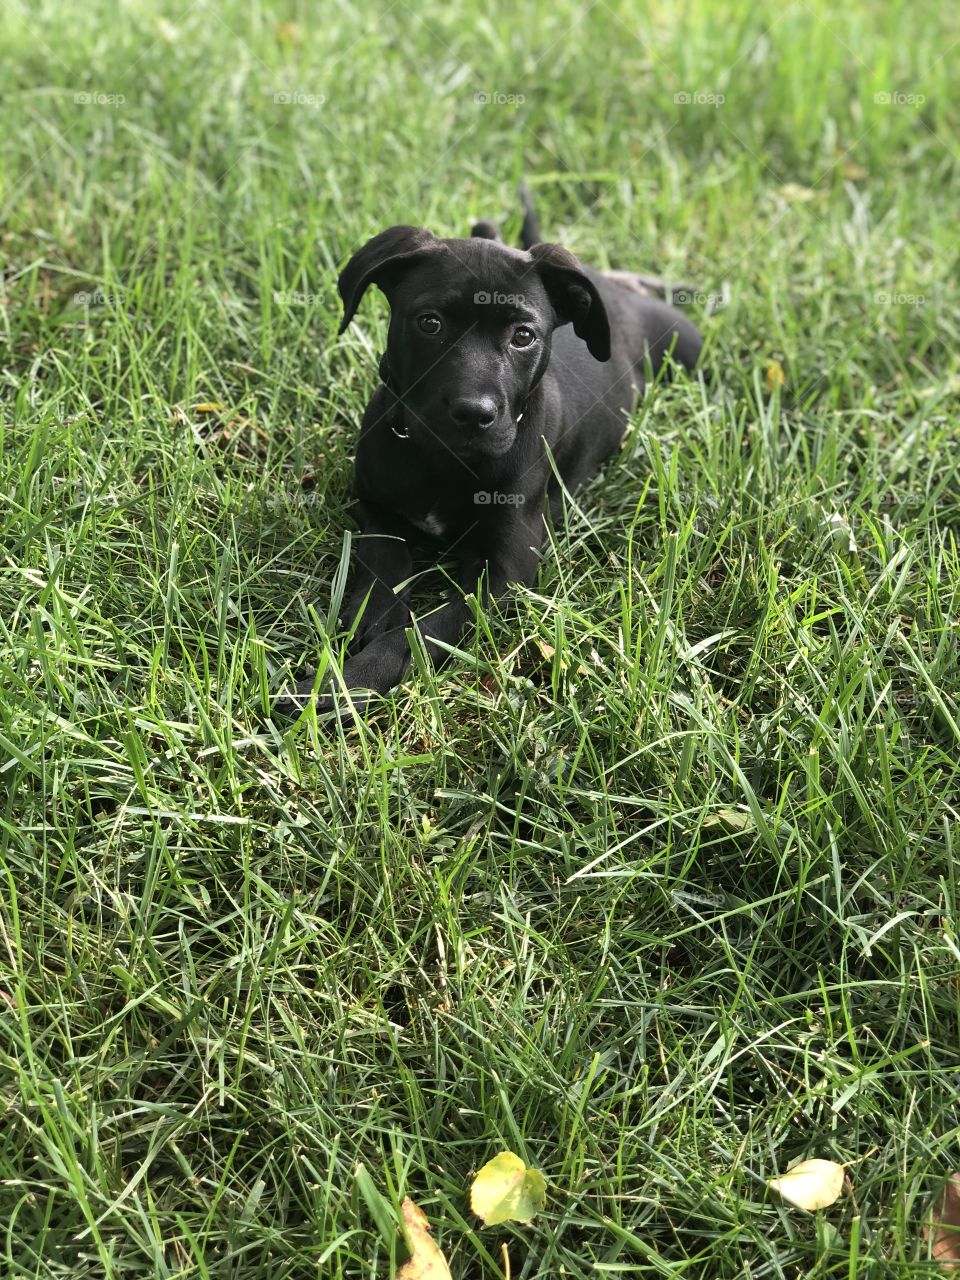 She loves grass